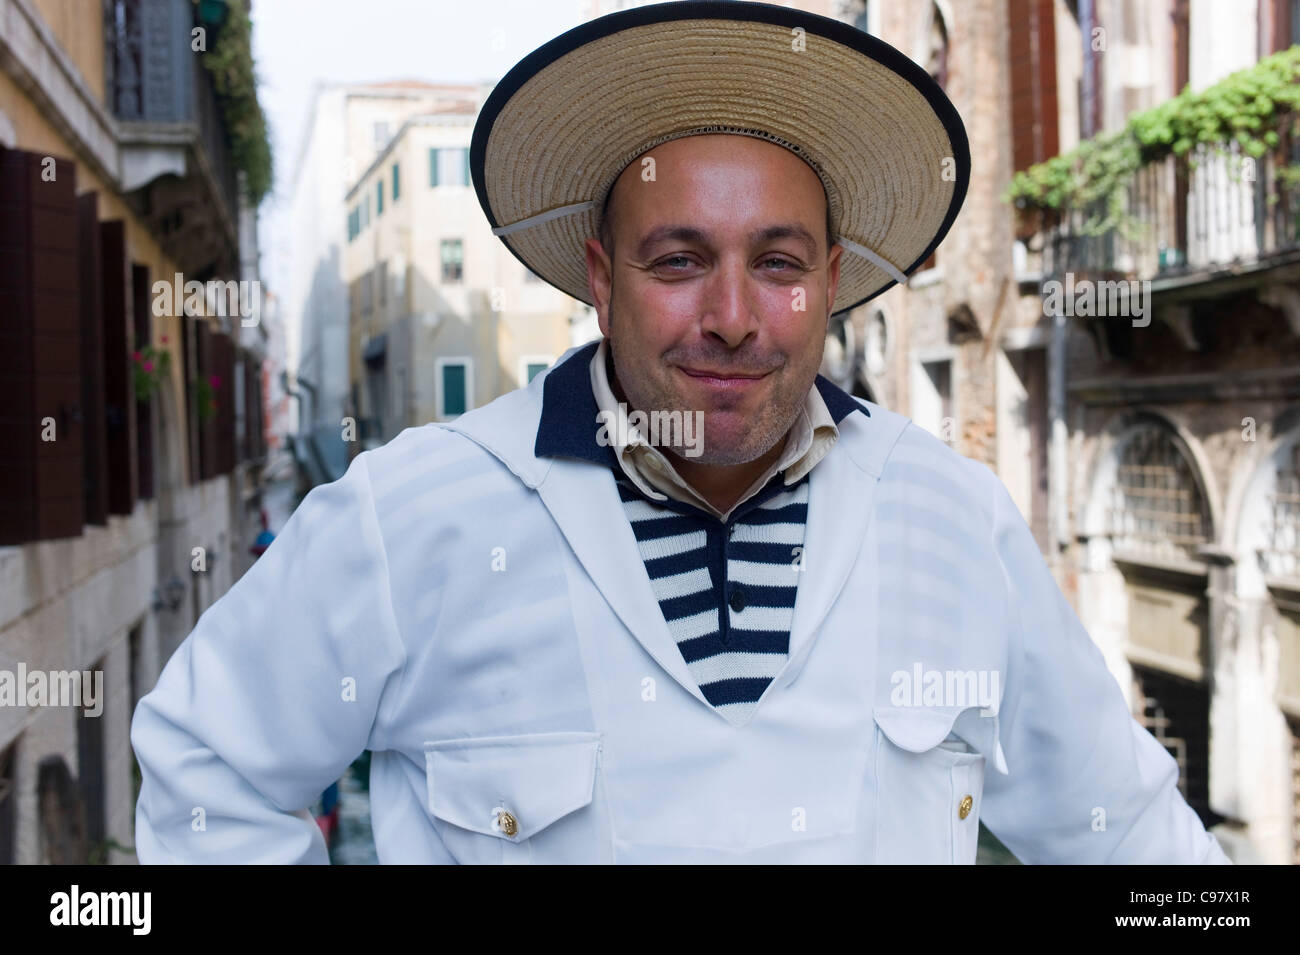 Cheerful gondolier, Gondolieri portant les vêtements traditionnels, Venise, Vénétie, Italie, Europe Banque D'Images